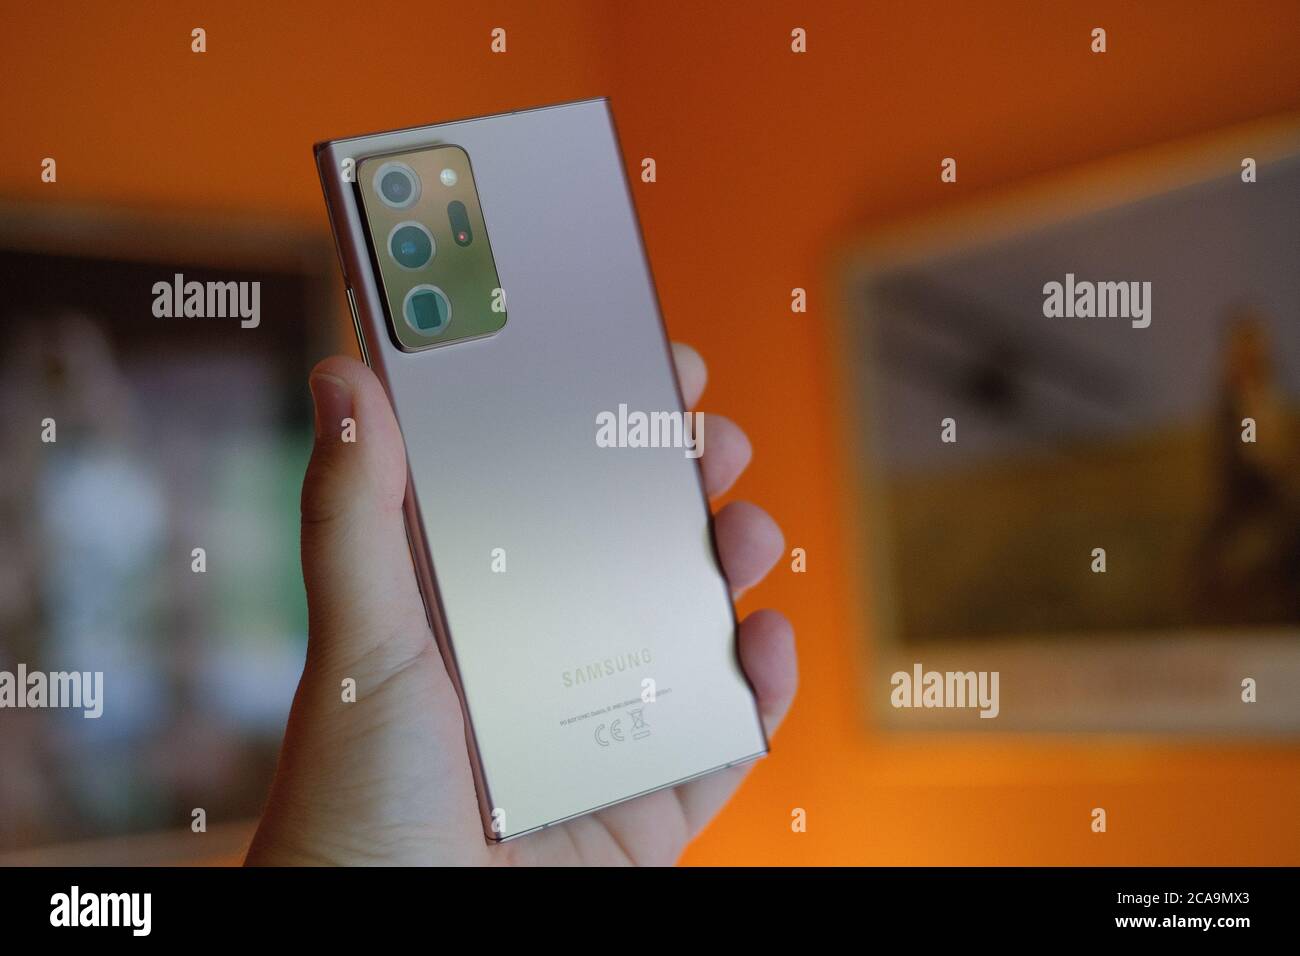 2020 AOÛT, RIGA - le nouveau smartphone Android Samsung Galaxy Note 20 Ultra 5G est affiché à des fins éditoriales Banque D'Images